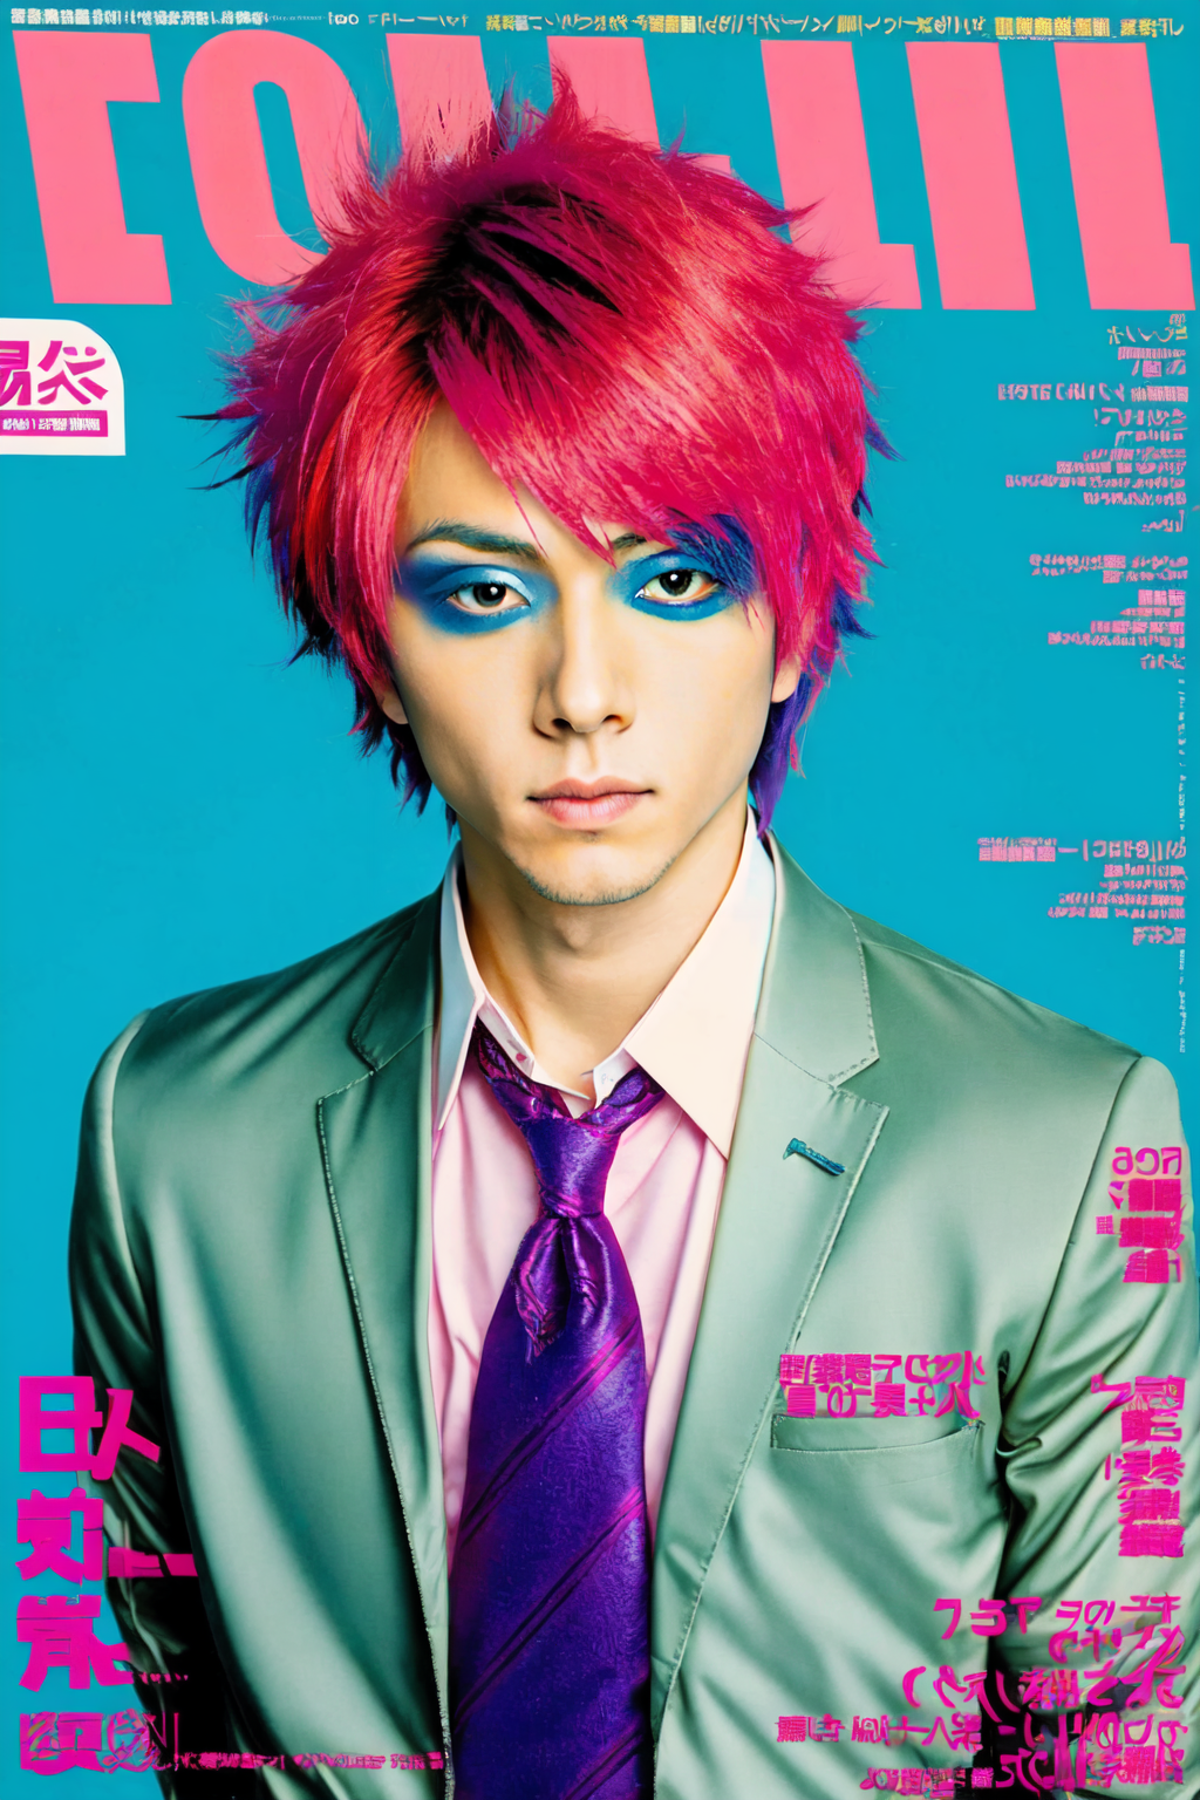 Nihon Music Magazine Style image by duskfallcrew